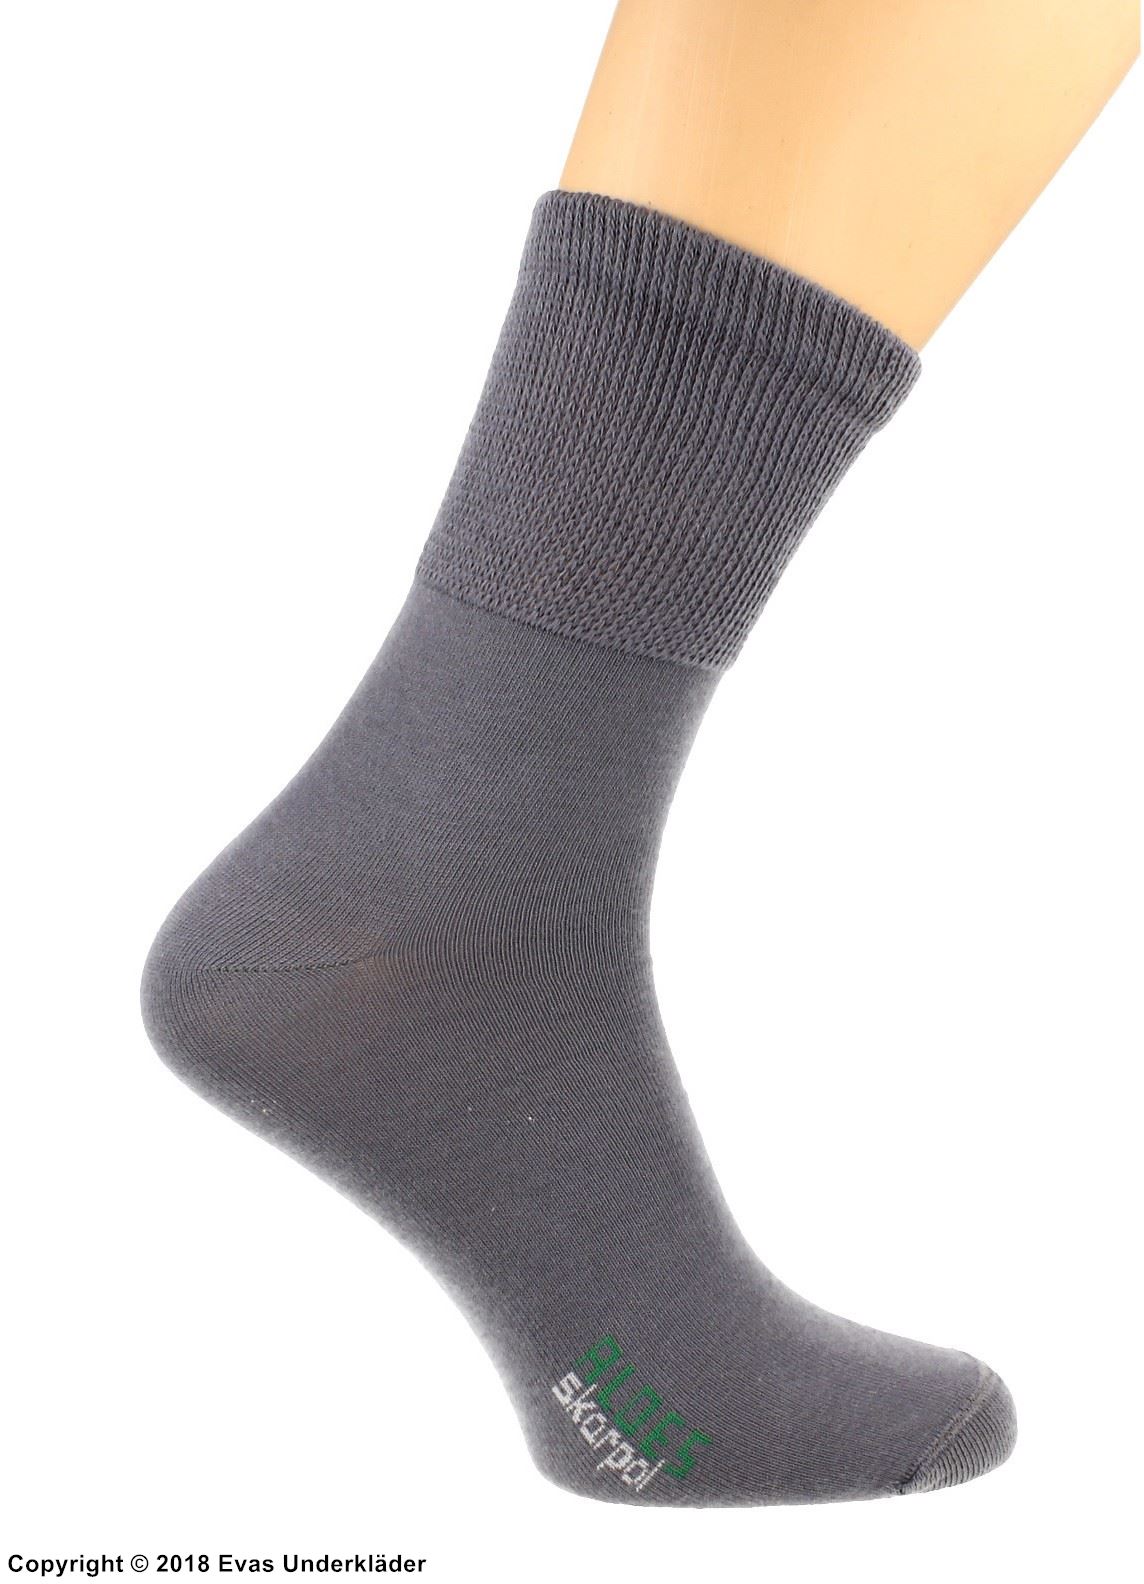 Comfortable men's socks, cotton, non-restrictive cuffs